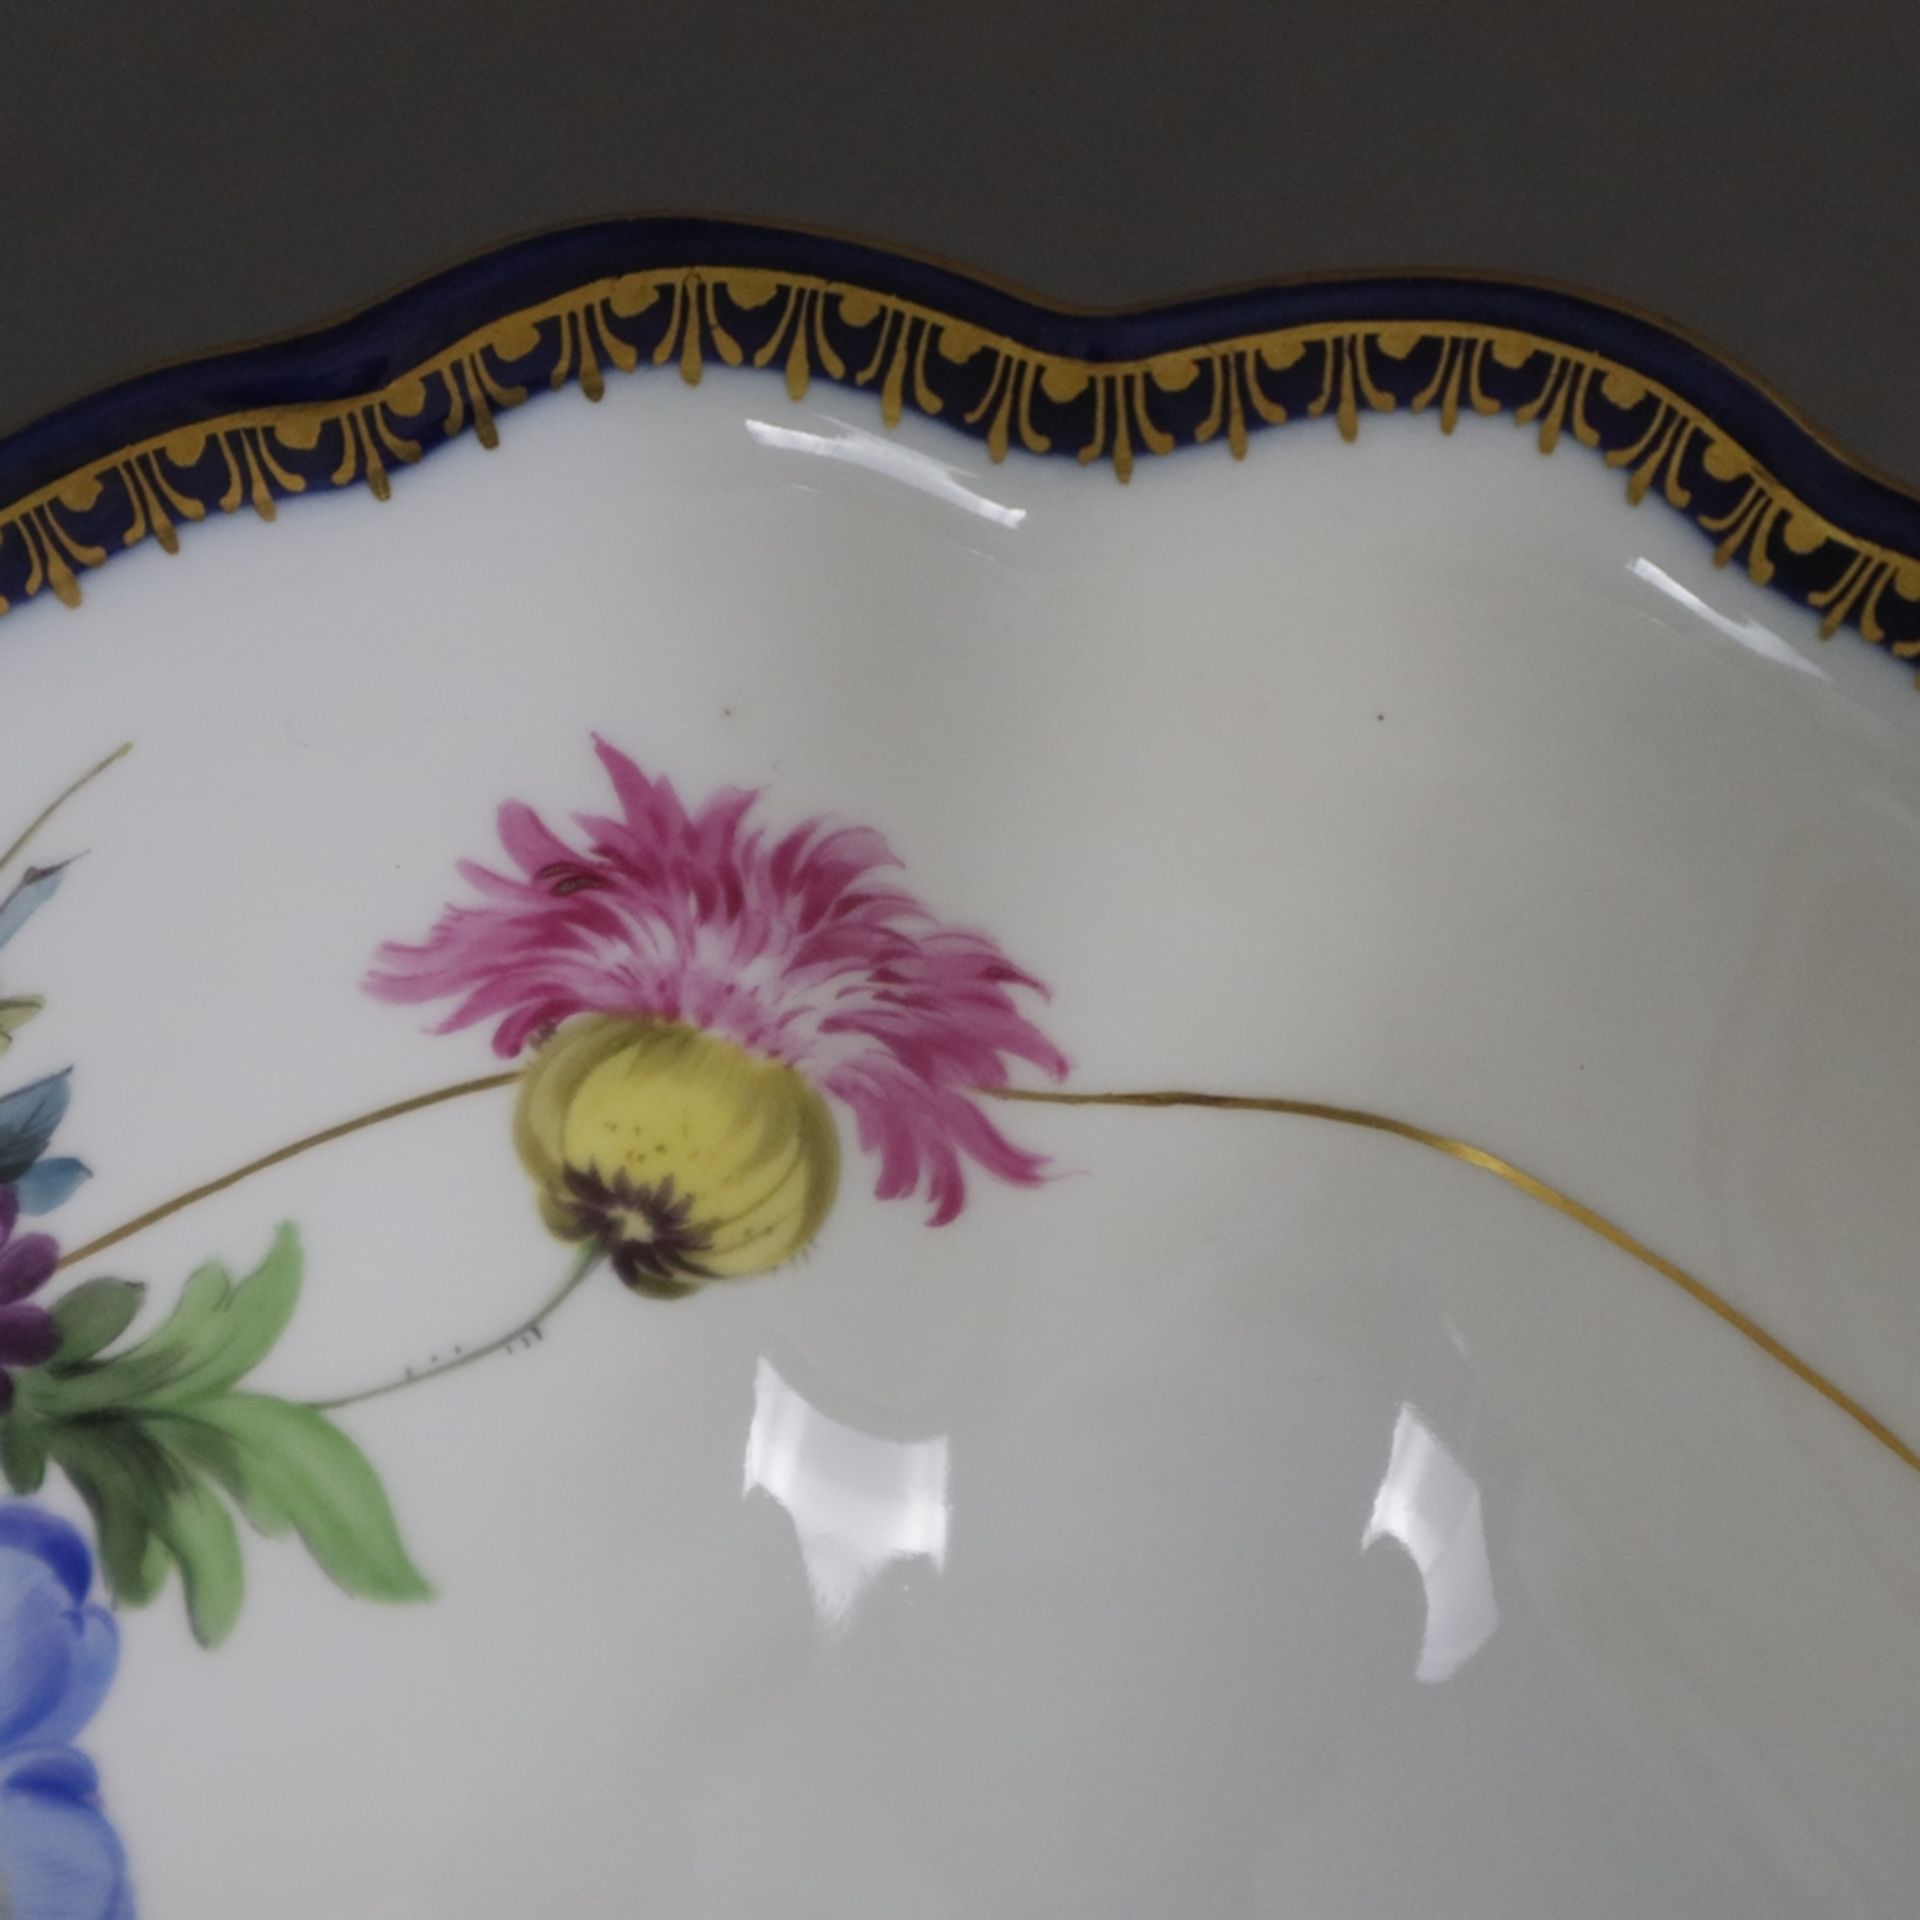 Salatschüssel - Meissen, Porzellan, Form "Neuer Ausschnitt", innen und außen polychrome Blumenmaler - Image 5 of 9